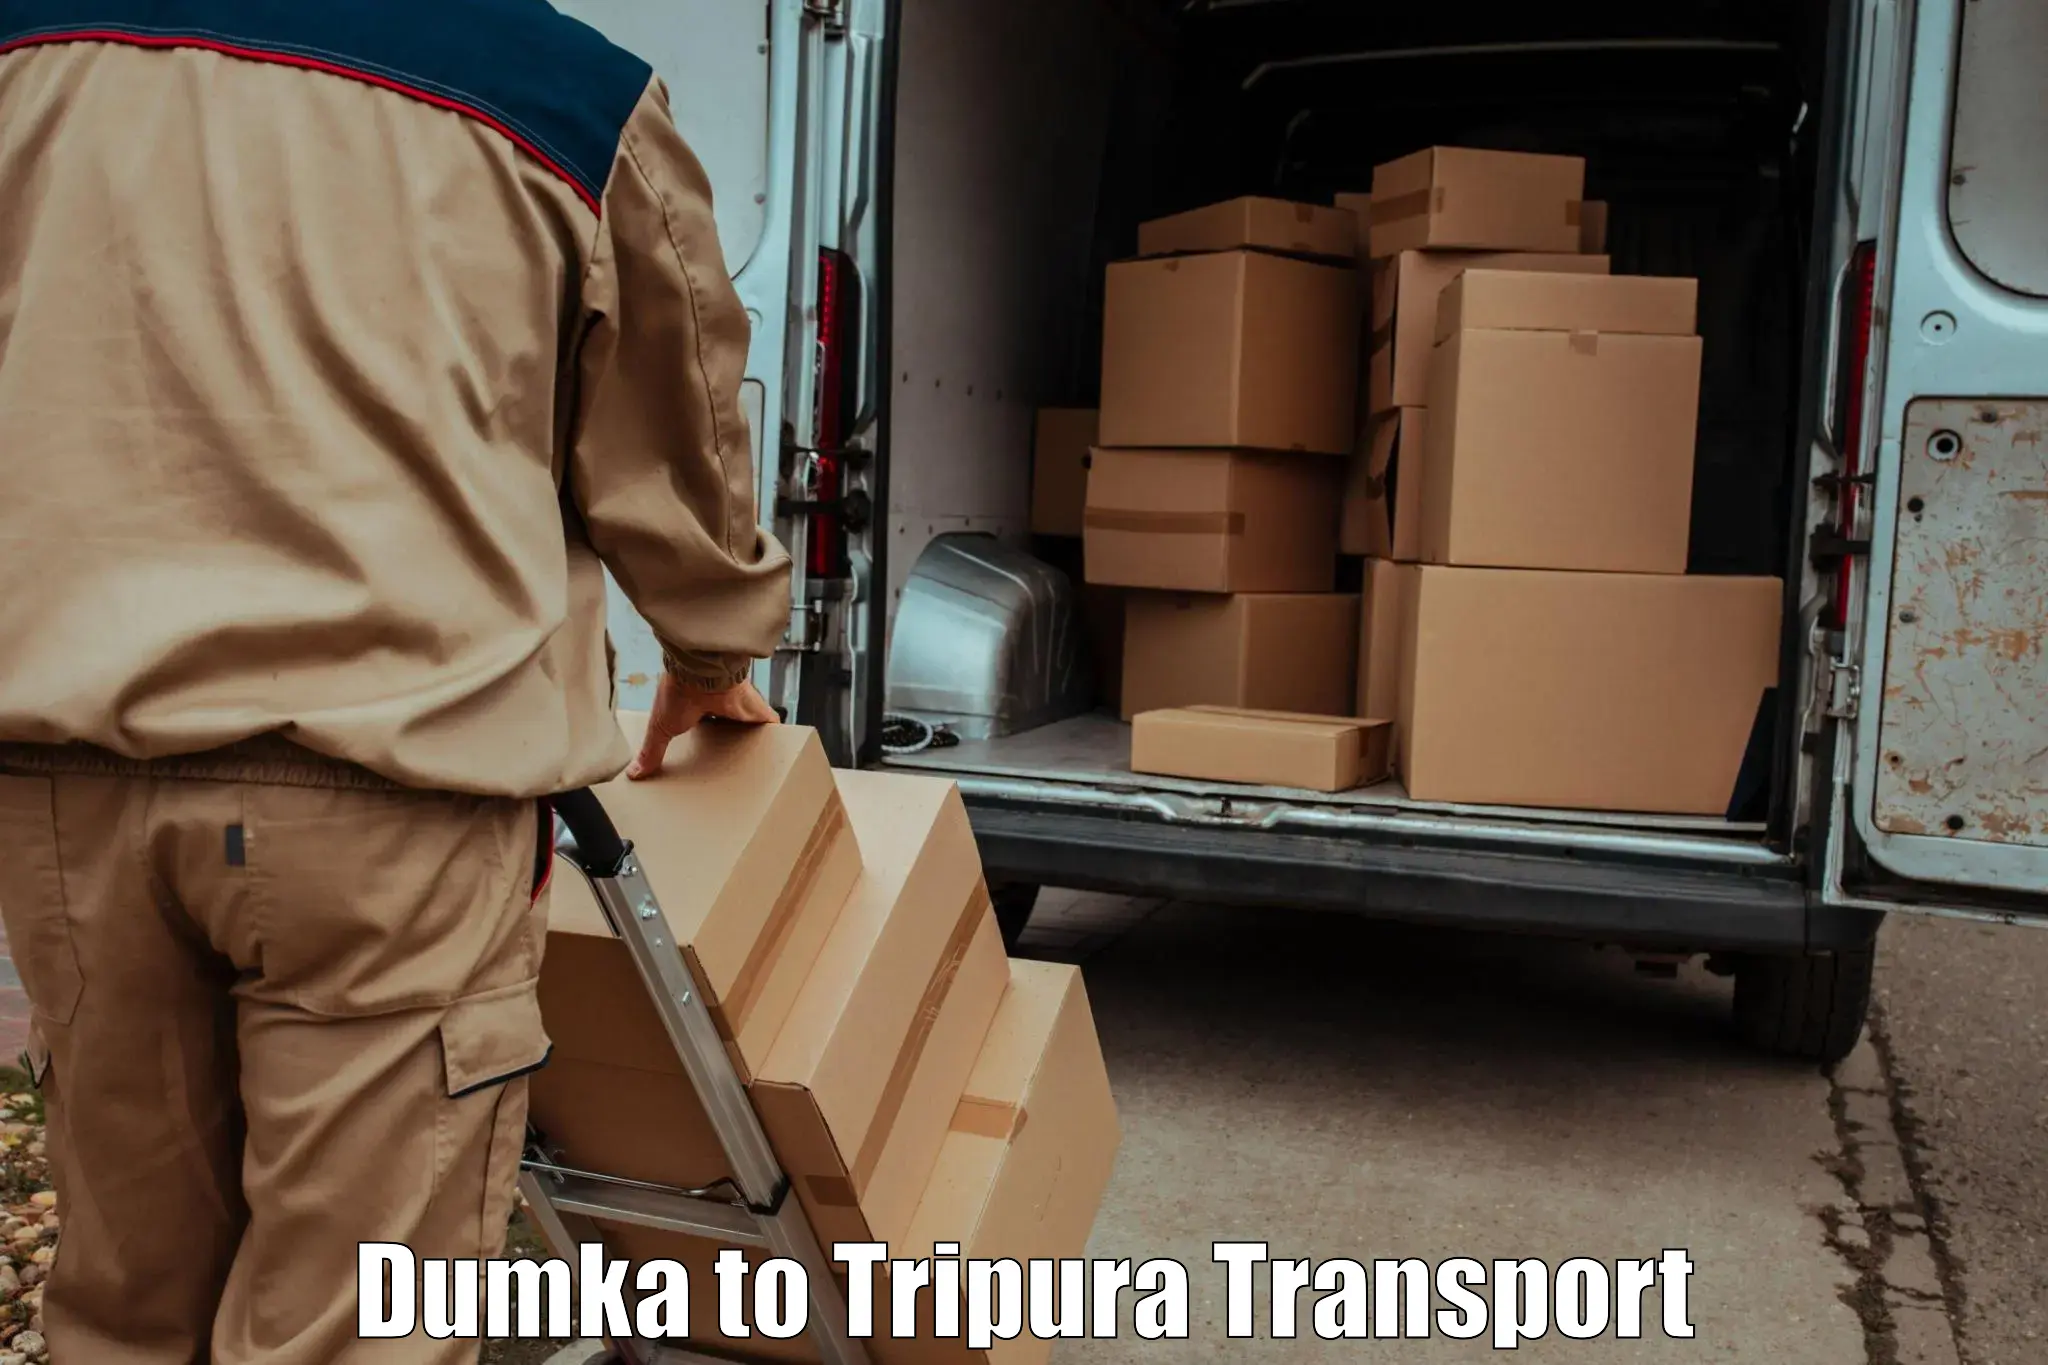 Luggage transport services Dumka to Kailashahar